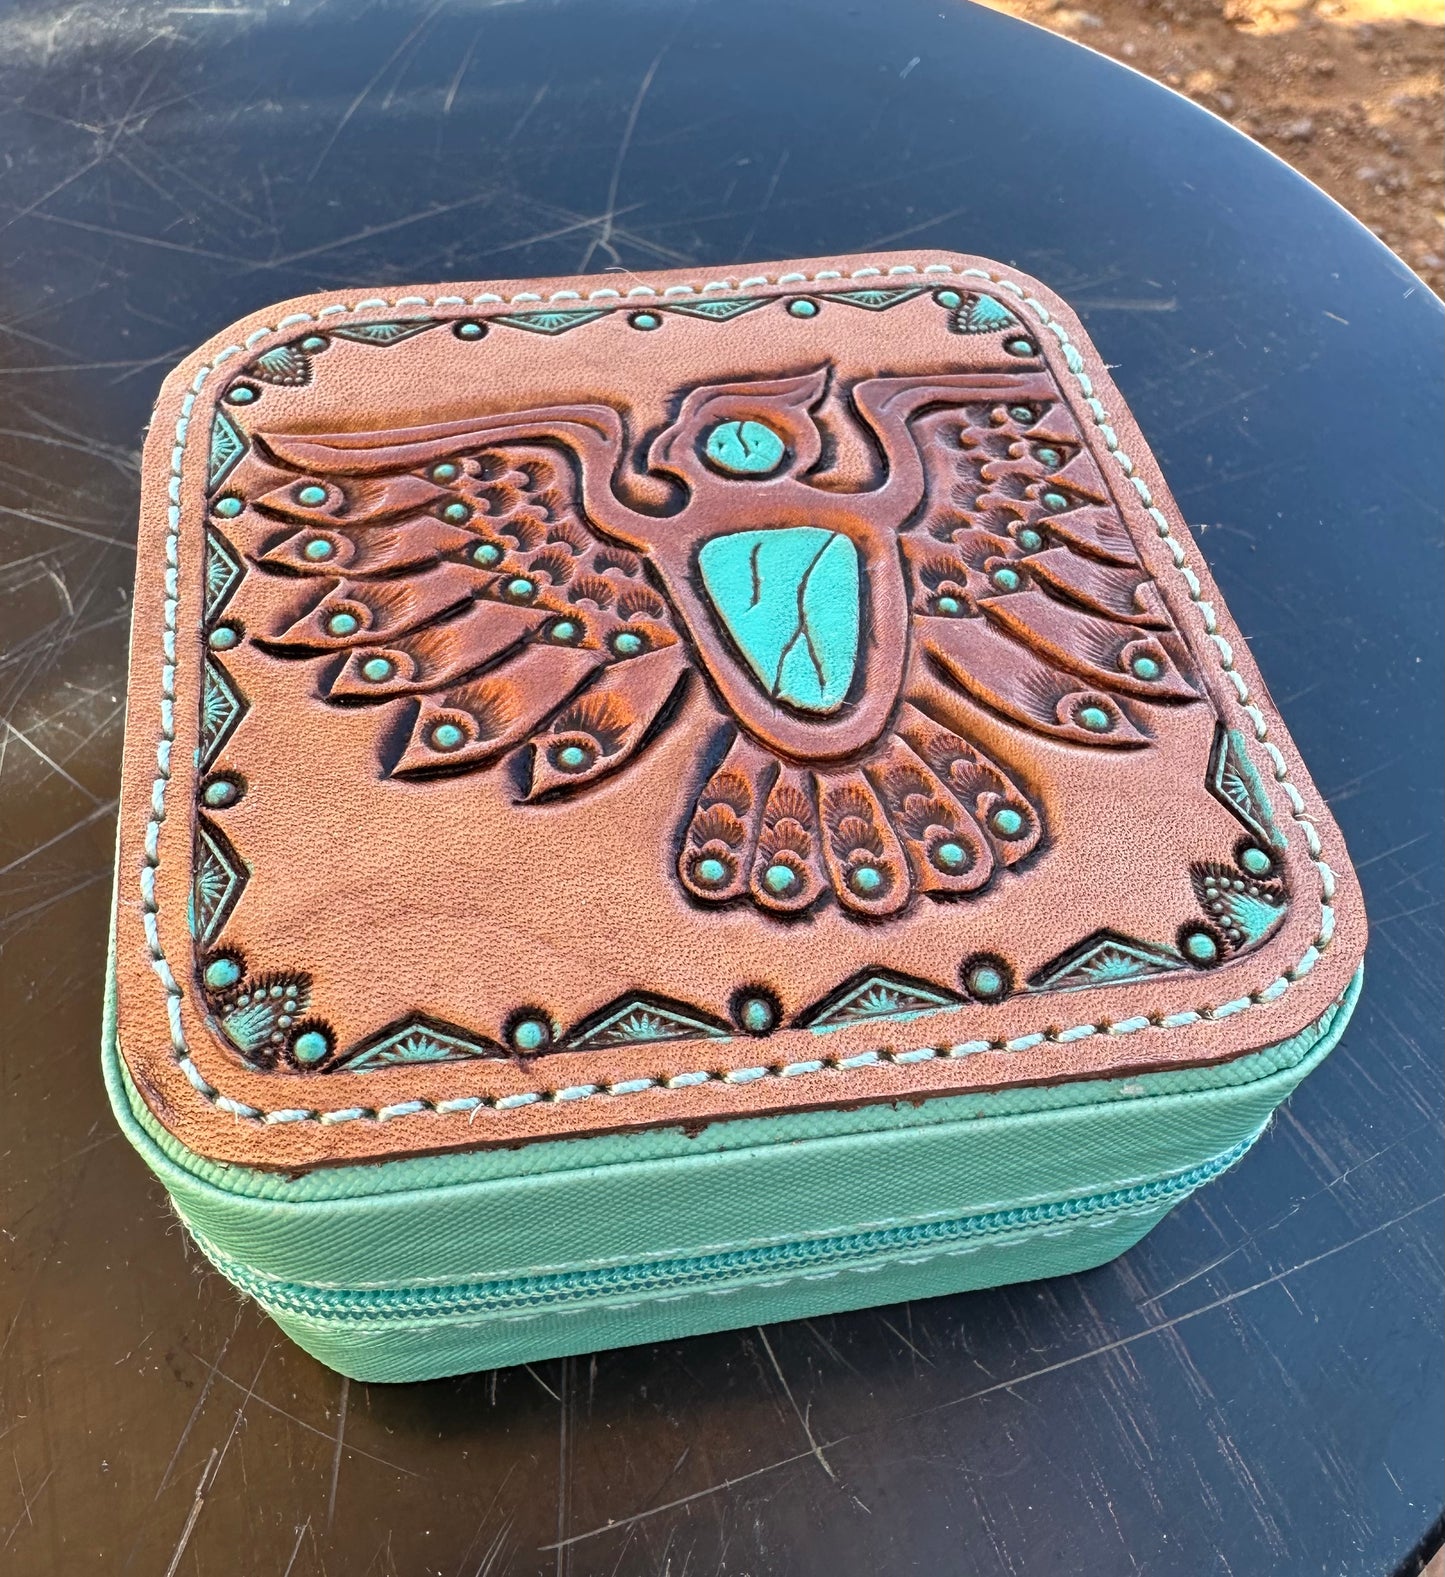 Southwestern tooled leather thunderbird travel jewelry case